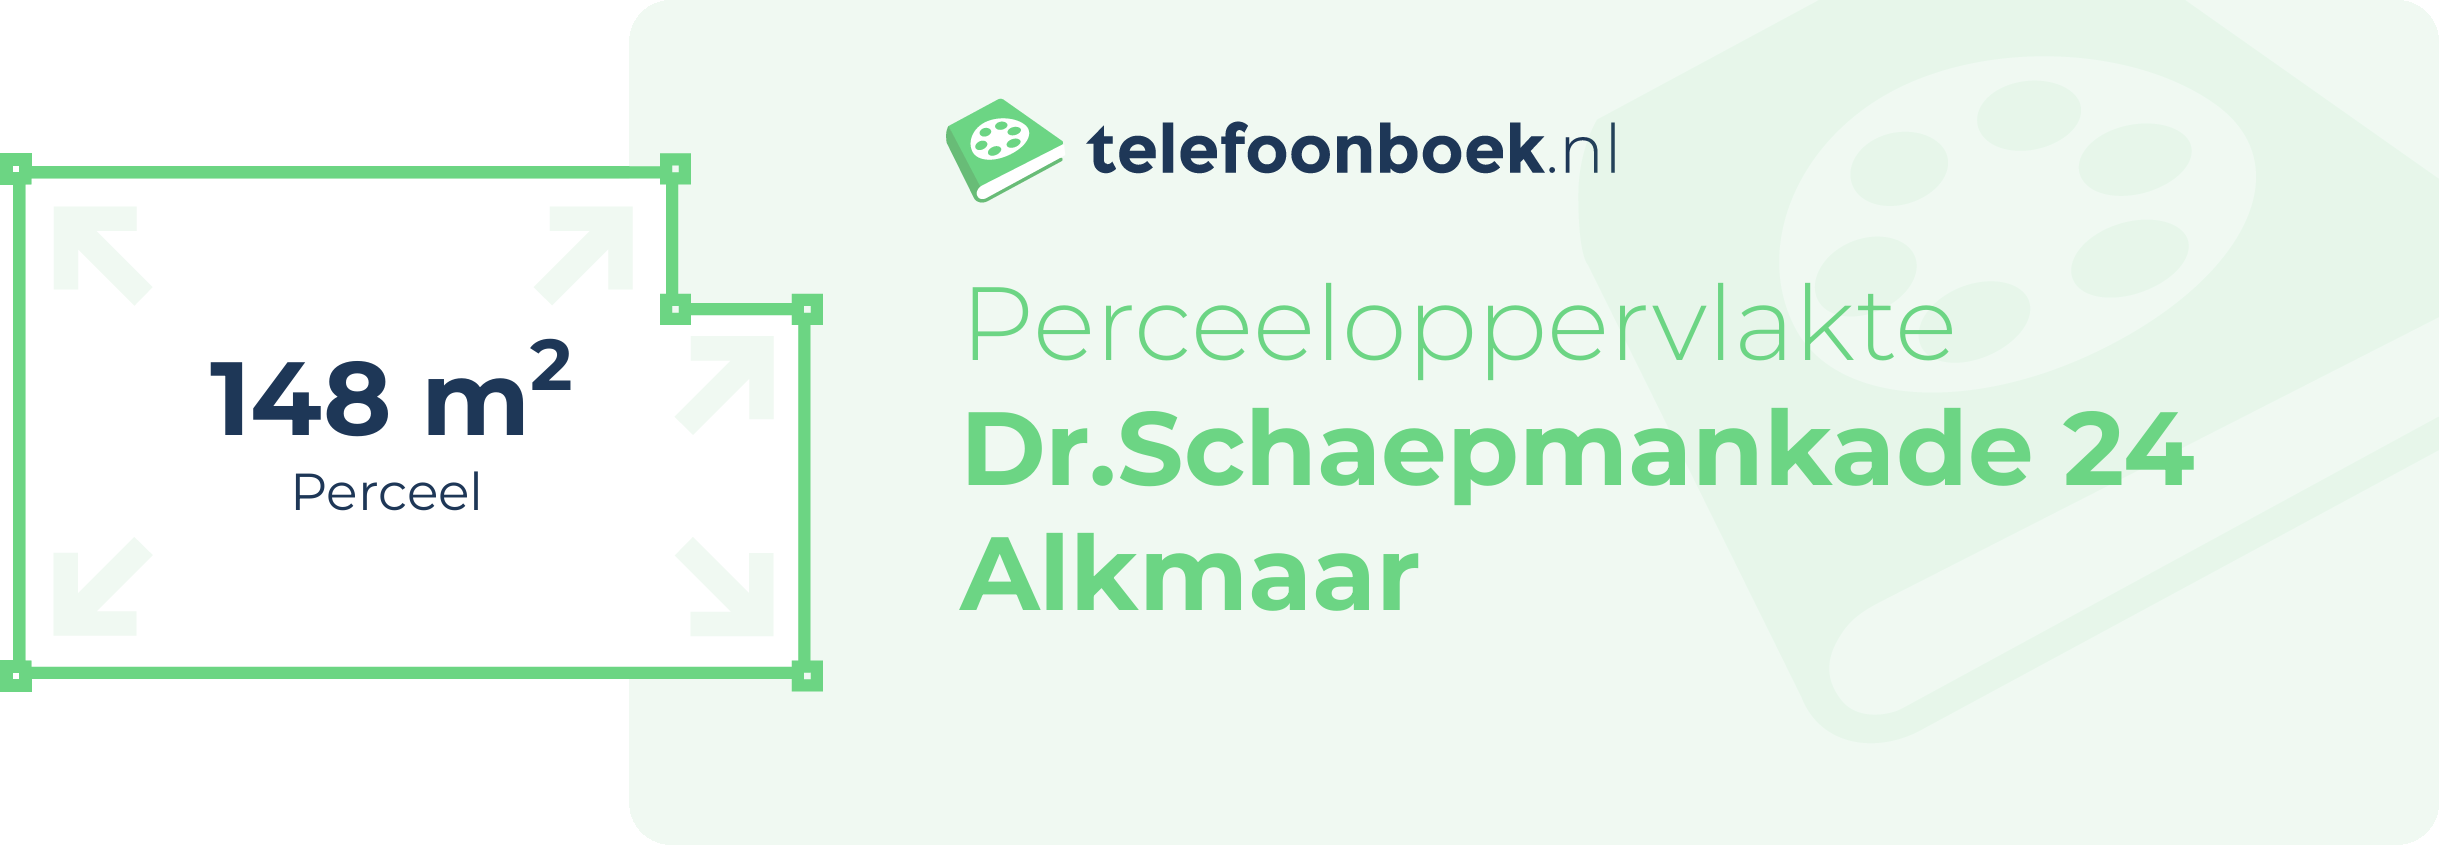 Perceeloppervlakte Dr.Schaepmankade 24 Alkmaar